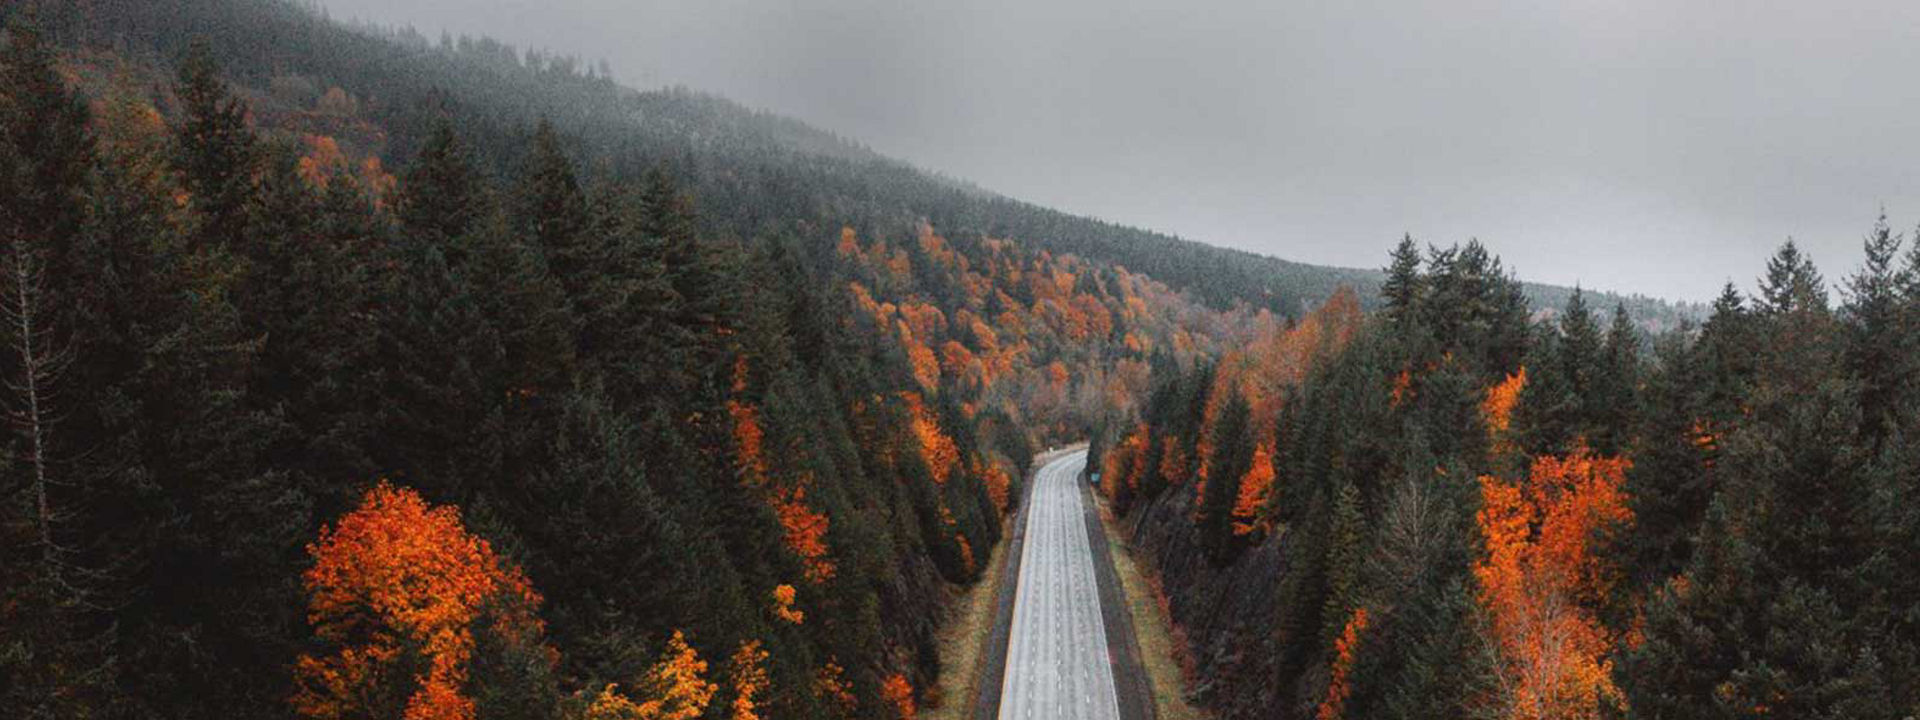 Esta imagem é uma autoestrada vazia, que atravessa uma floresta, no outono, para mostrar que o Weather Control é um pneu para todas as estações do ano